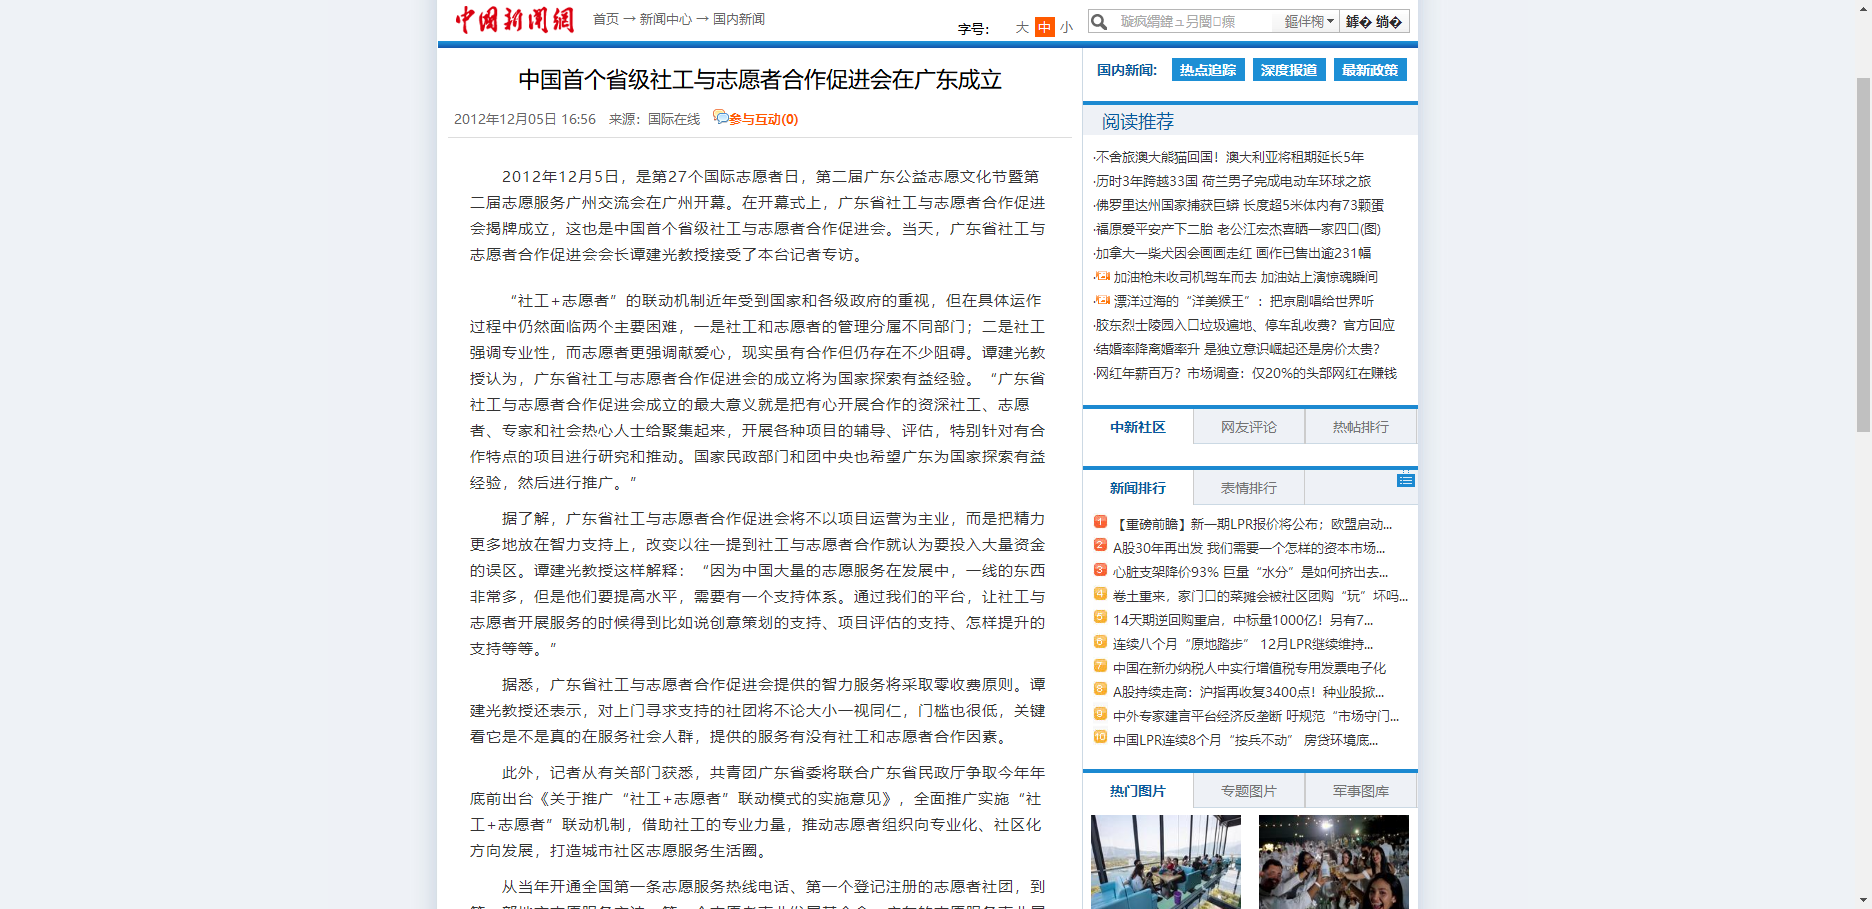 中国首个省级社工与志愿者合作促进会在广东成立